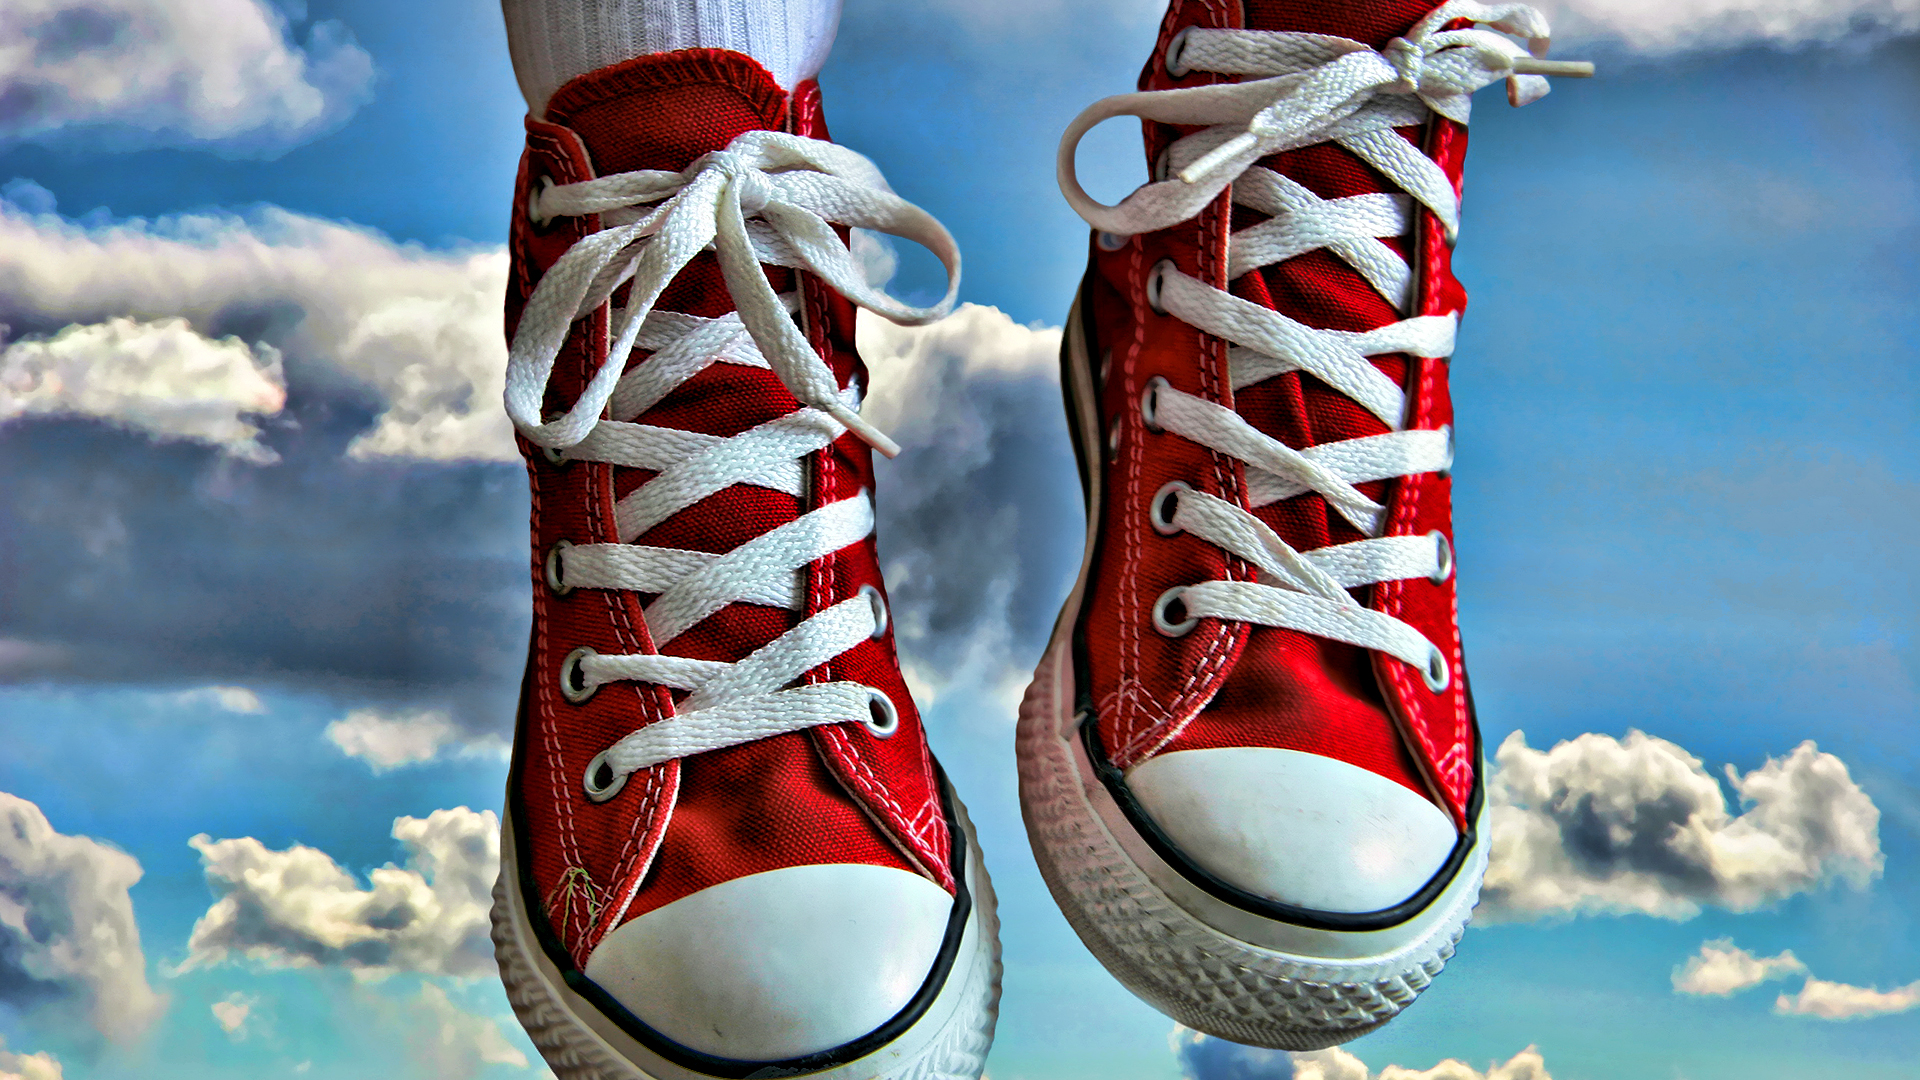 عکس خوشگل کفش آل استار قرمز با زمینه آسمان آبی زیبا